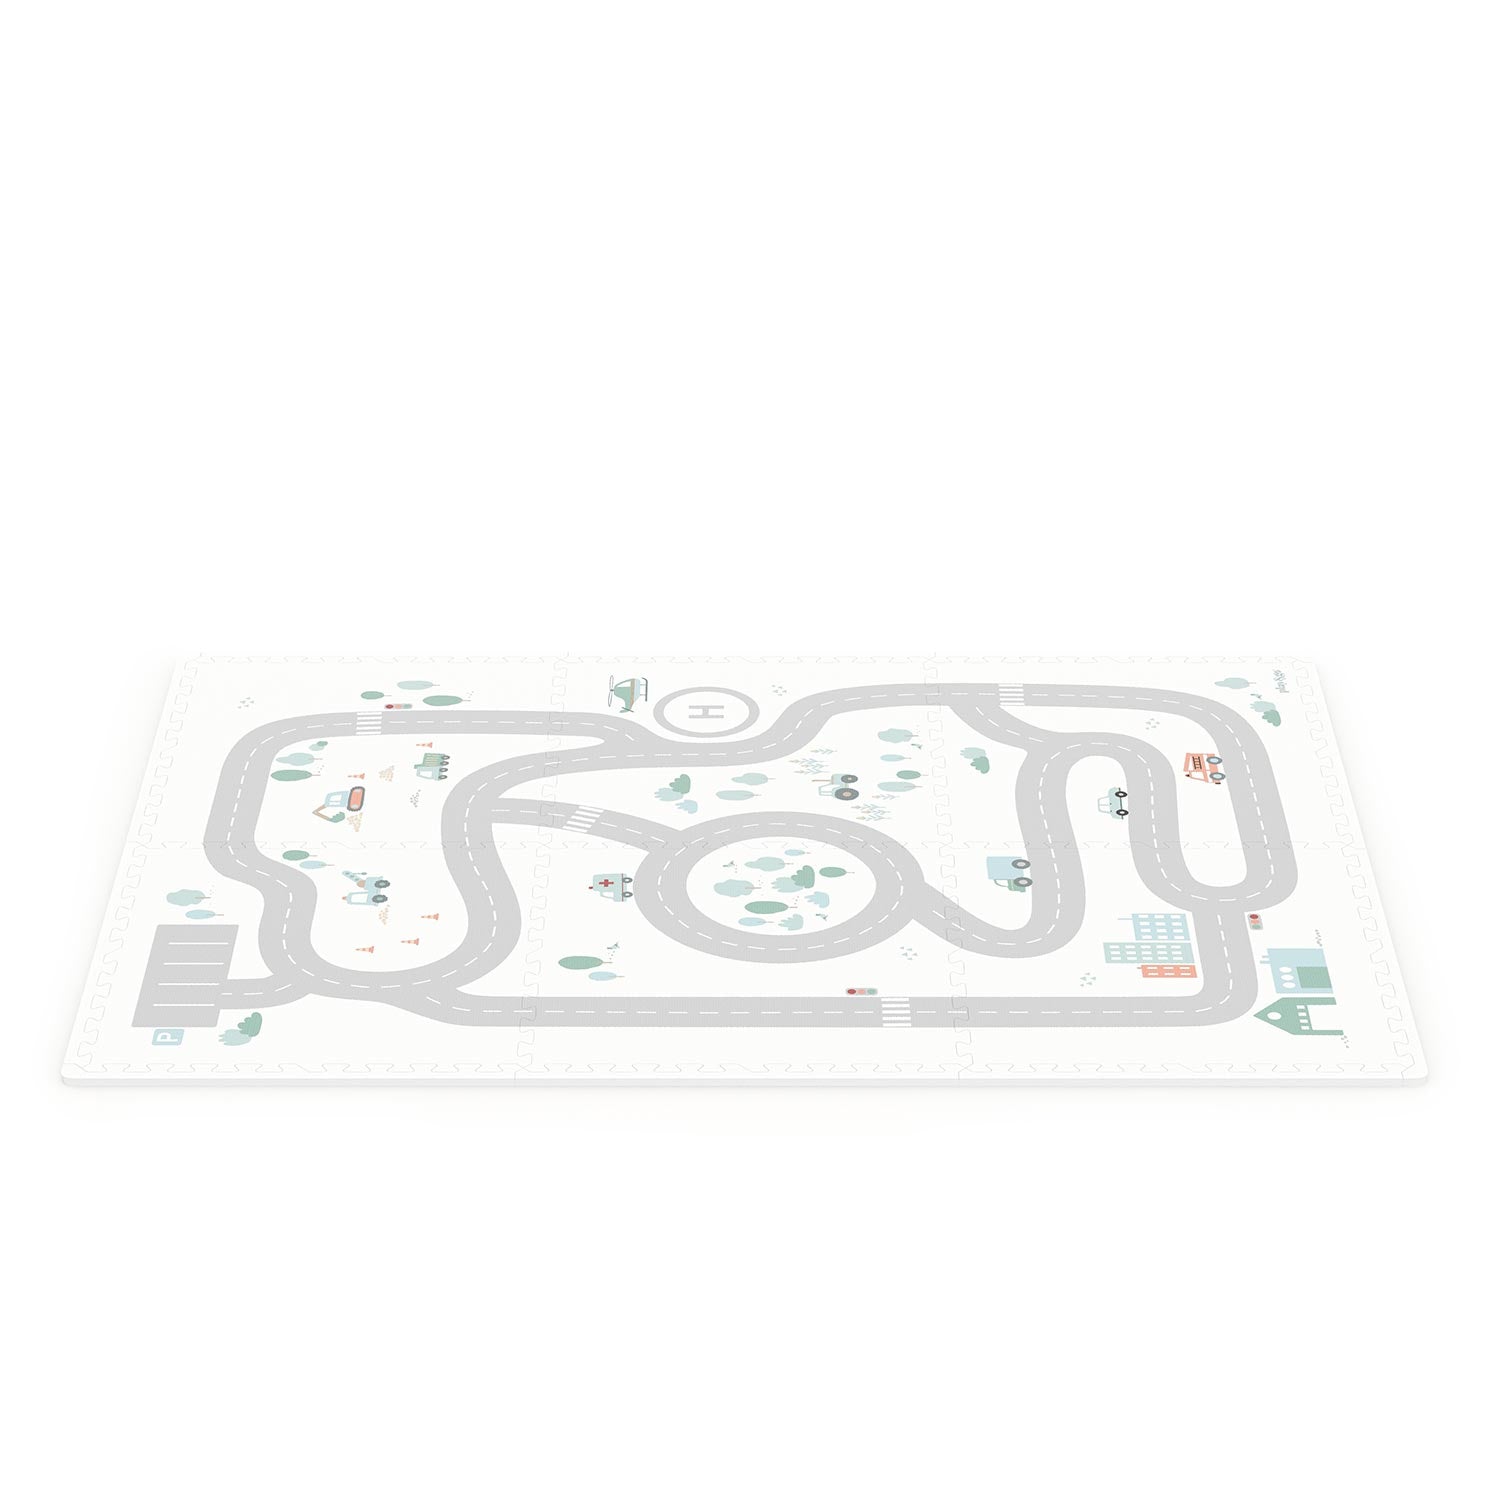 Tapis Puzzle Roadmap & Rangement Jouets - Eevaa, Play & Go